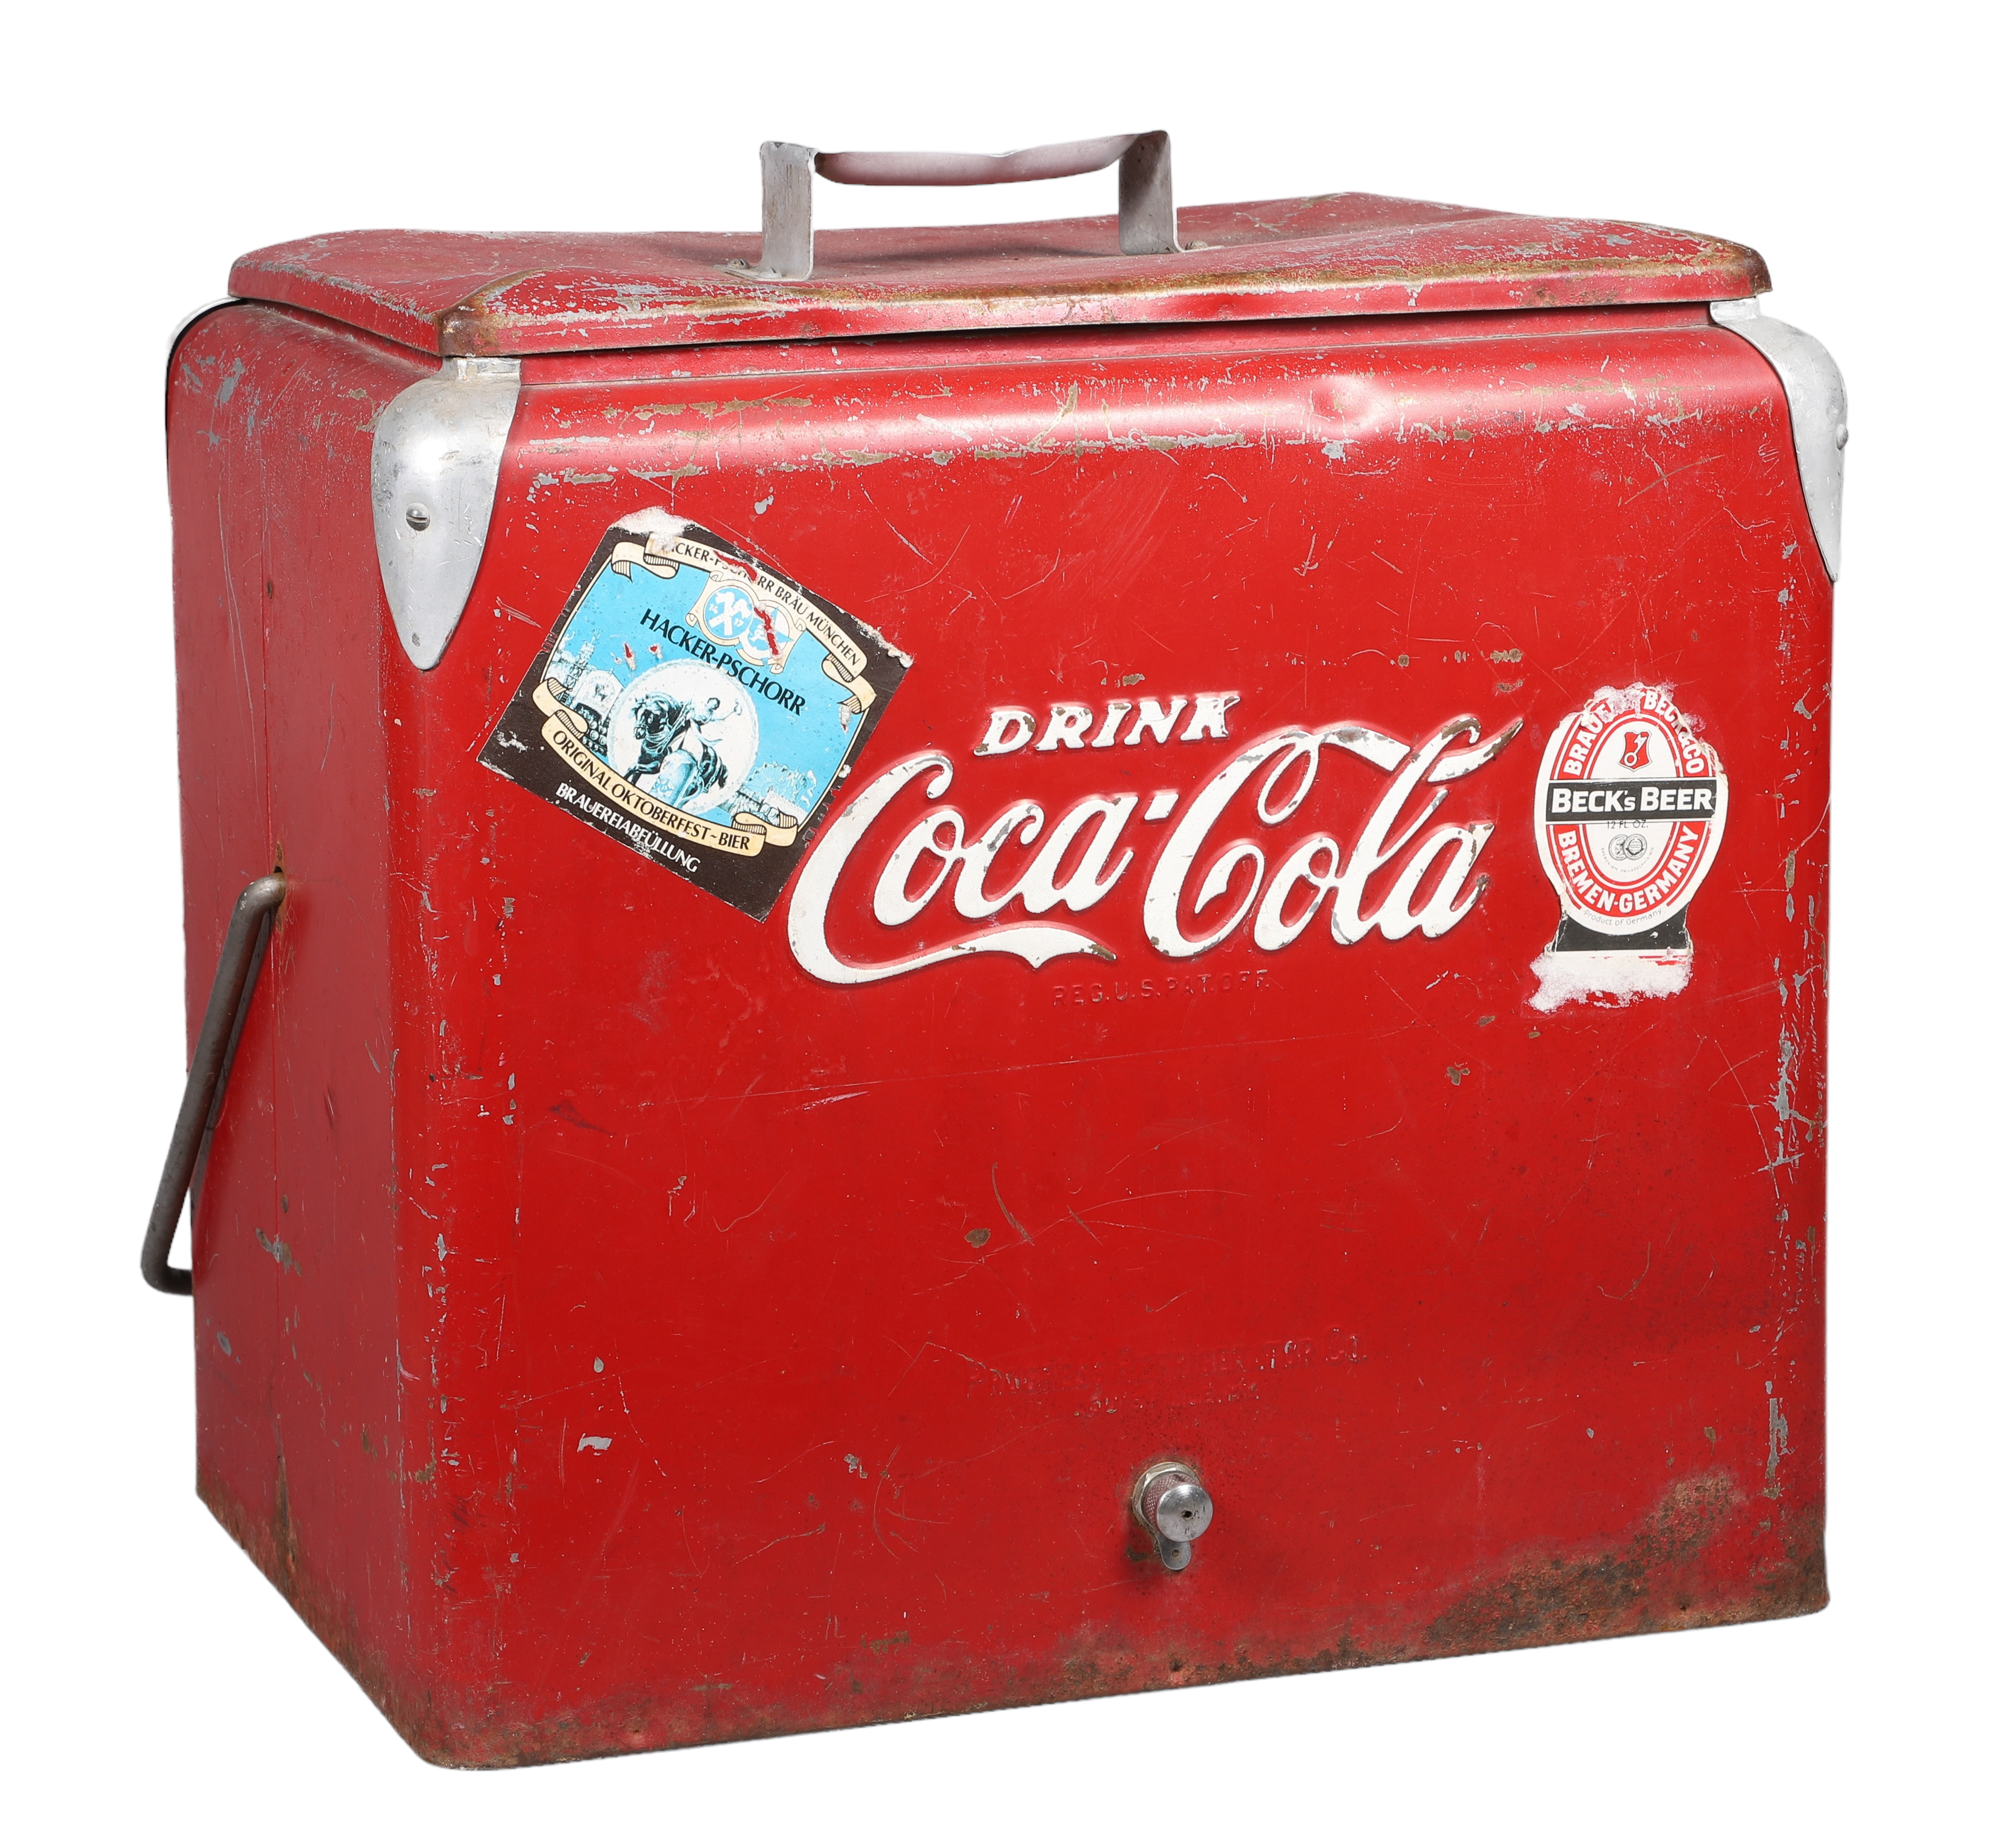 Vintage Drink Coca-Cola cooler,